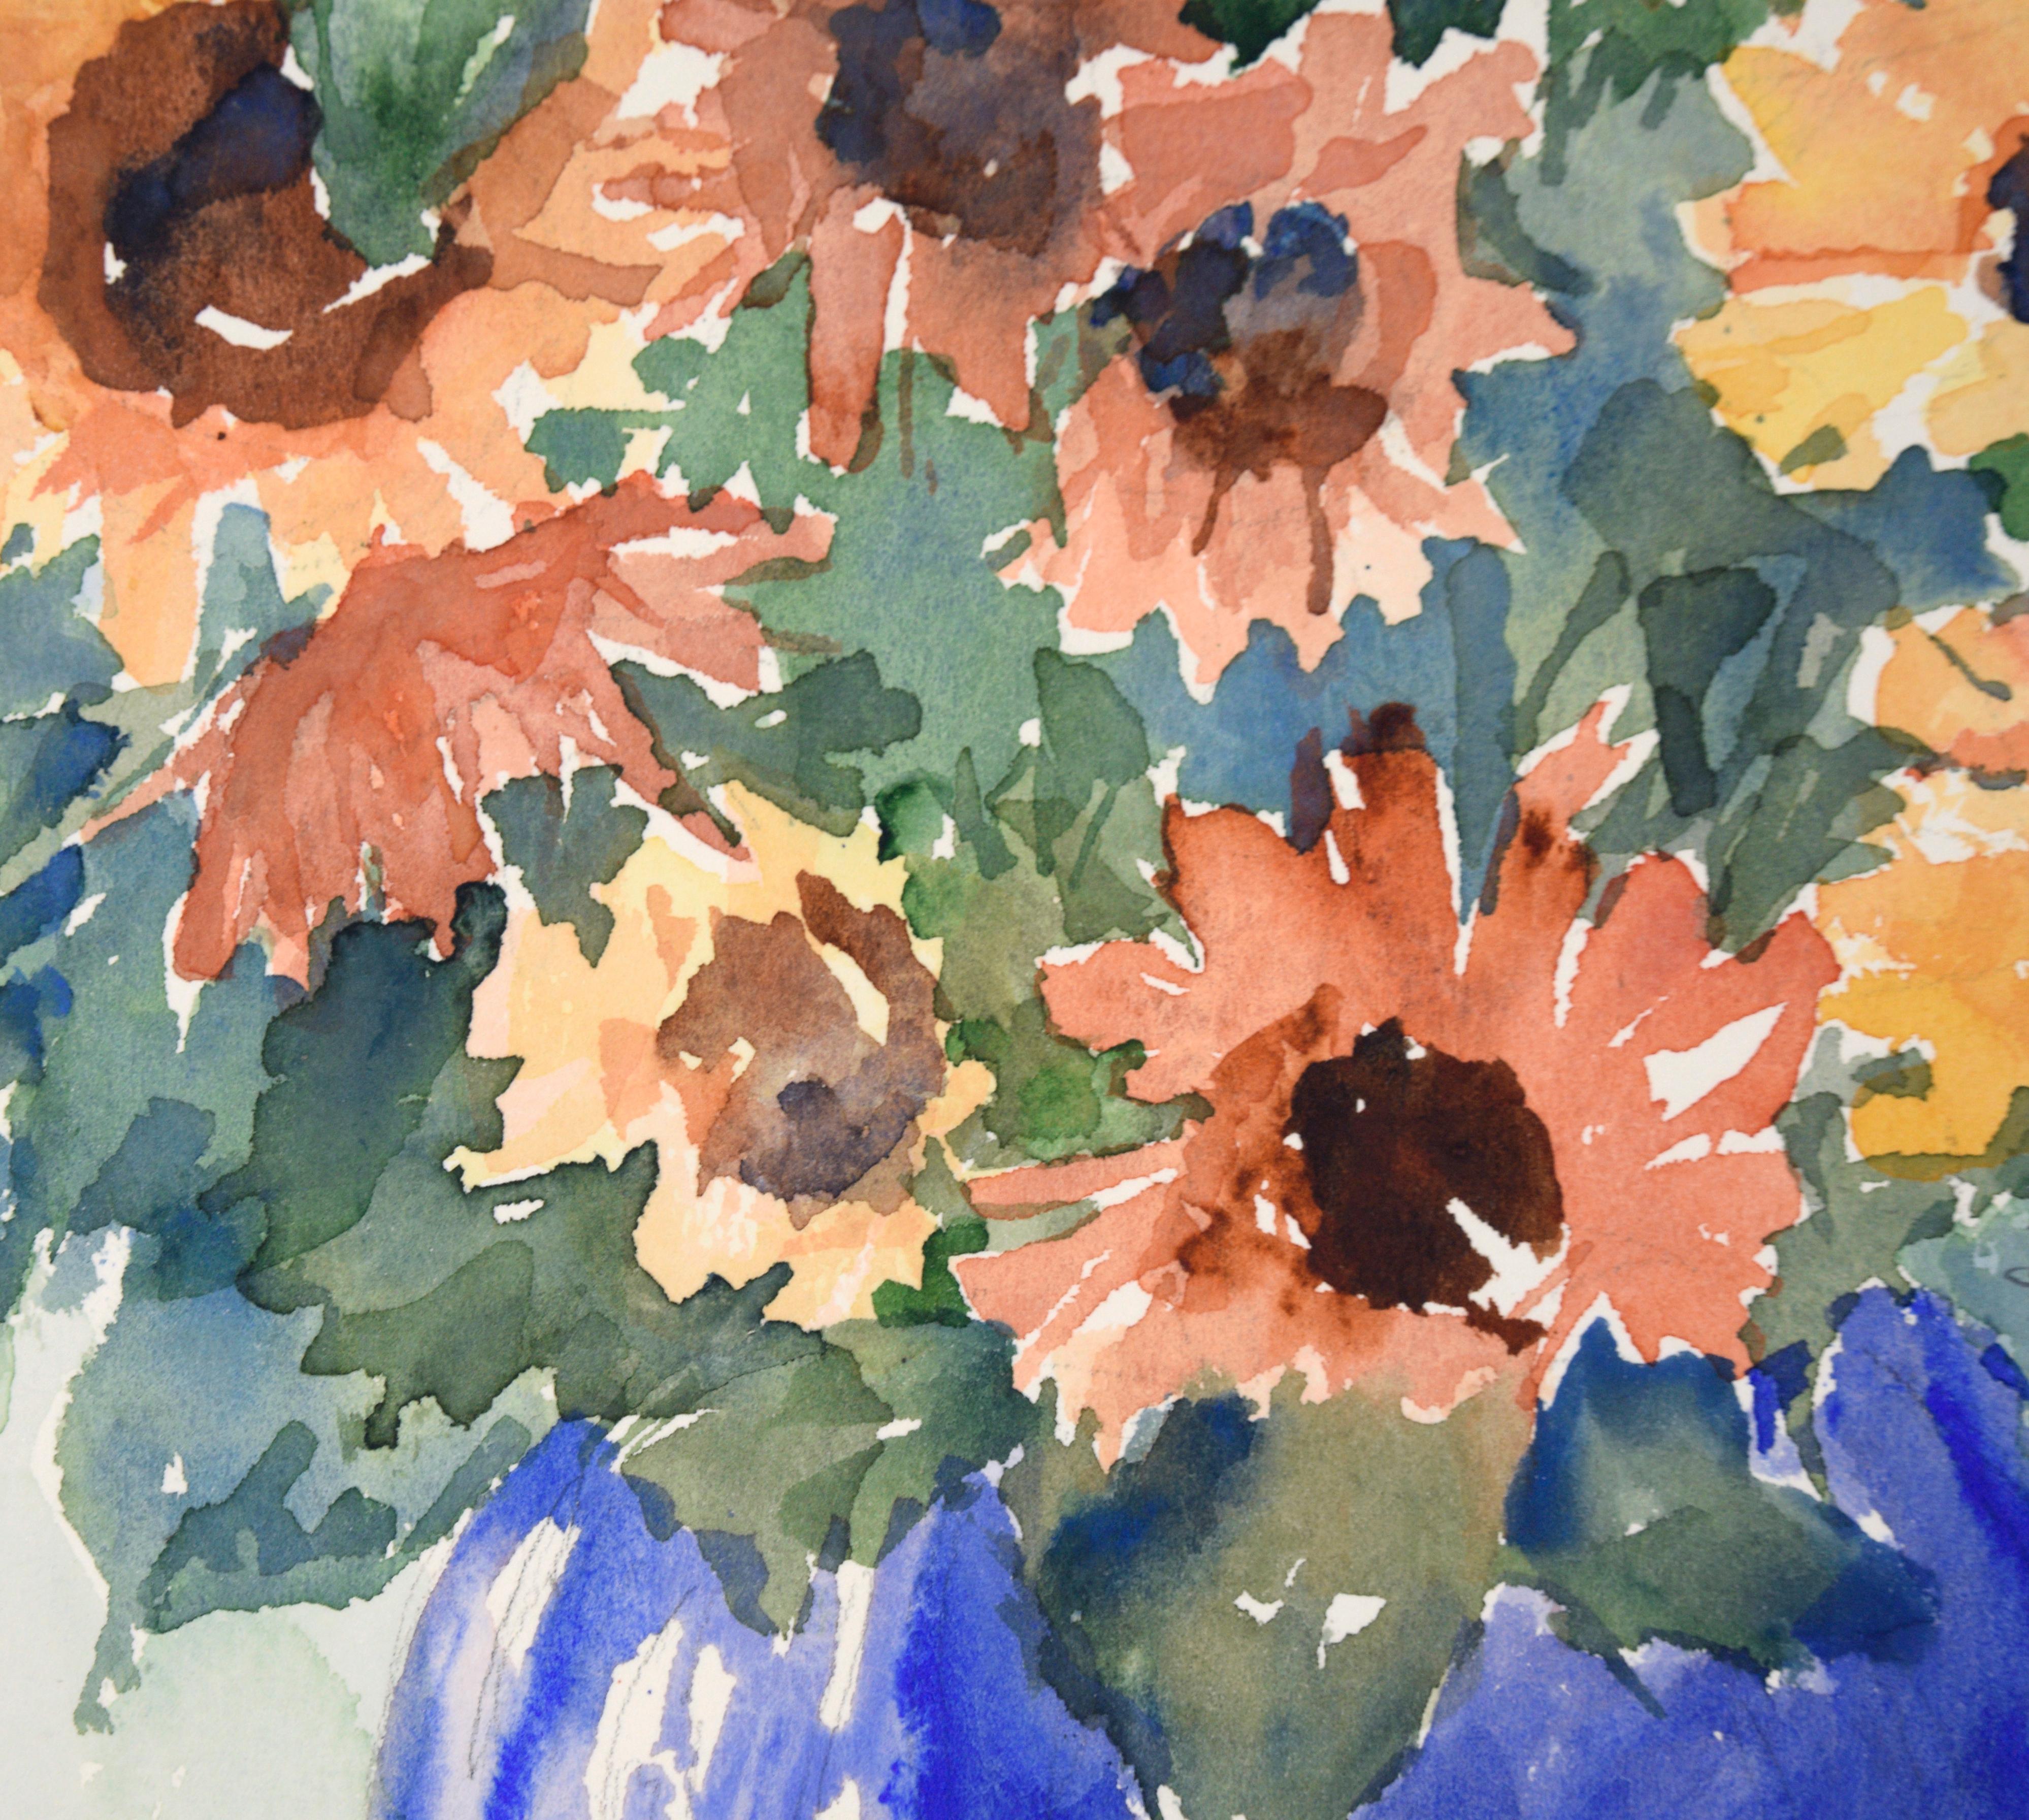 Lebendige Studie von Sonnenblumen von D. Bennett (20. Jahrhundert). Mehrere Sonnenblumen stehen in einer auffallend blauen Vase, die in einem lockeren, aber gekonnten Stil gestaltet ist. Die Blumen und das Blattwerk sind teilweise abstrahiert, so